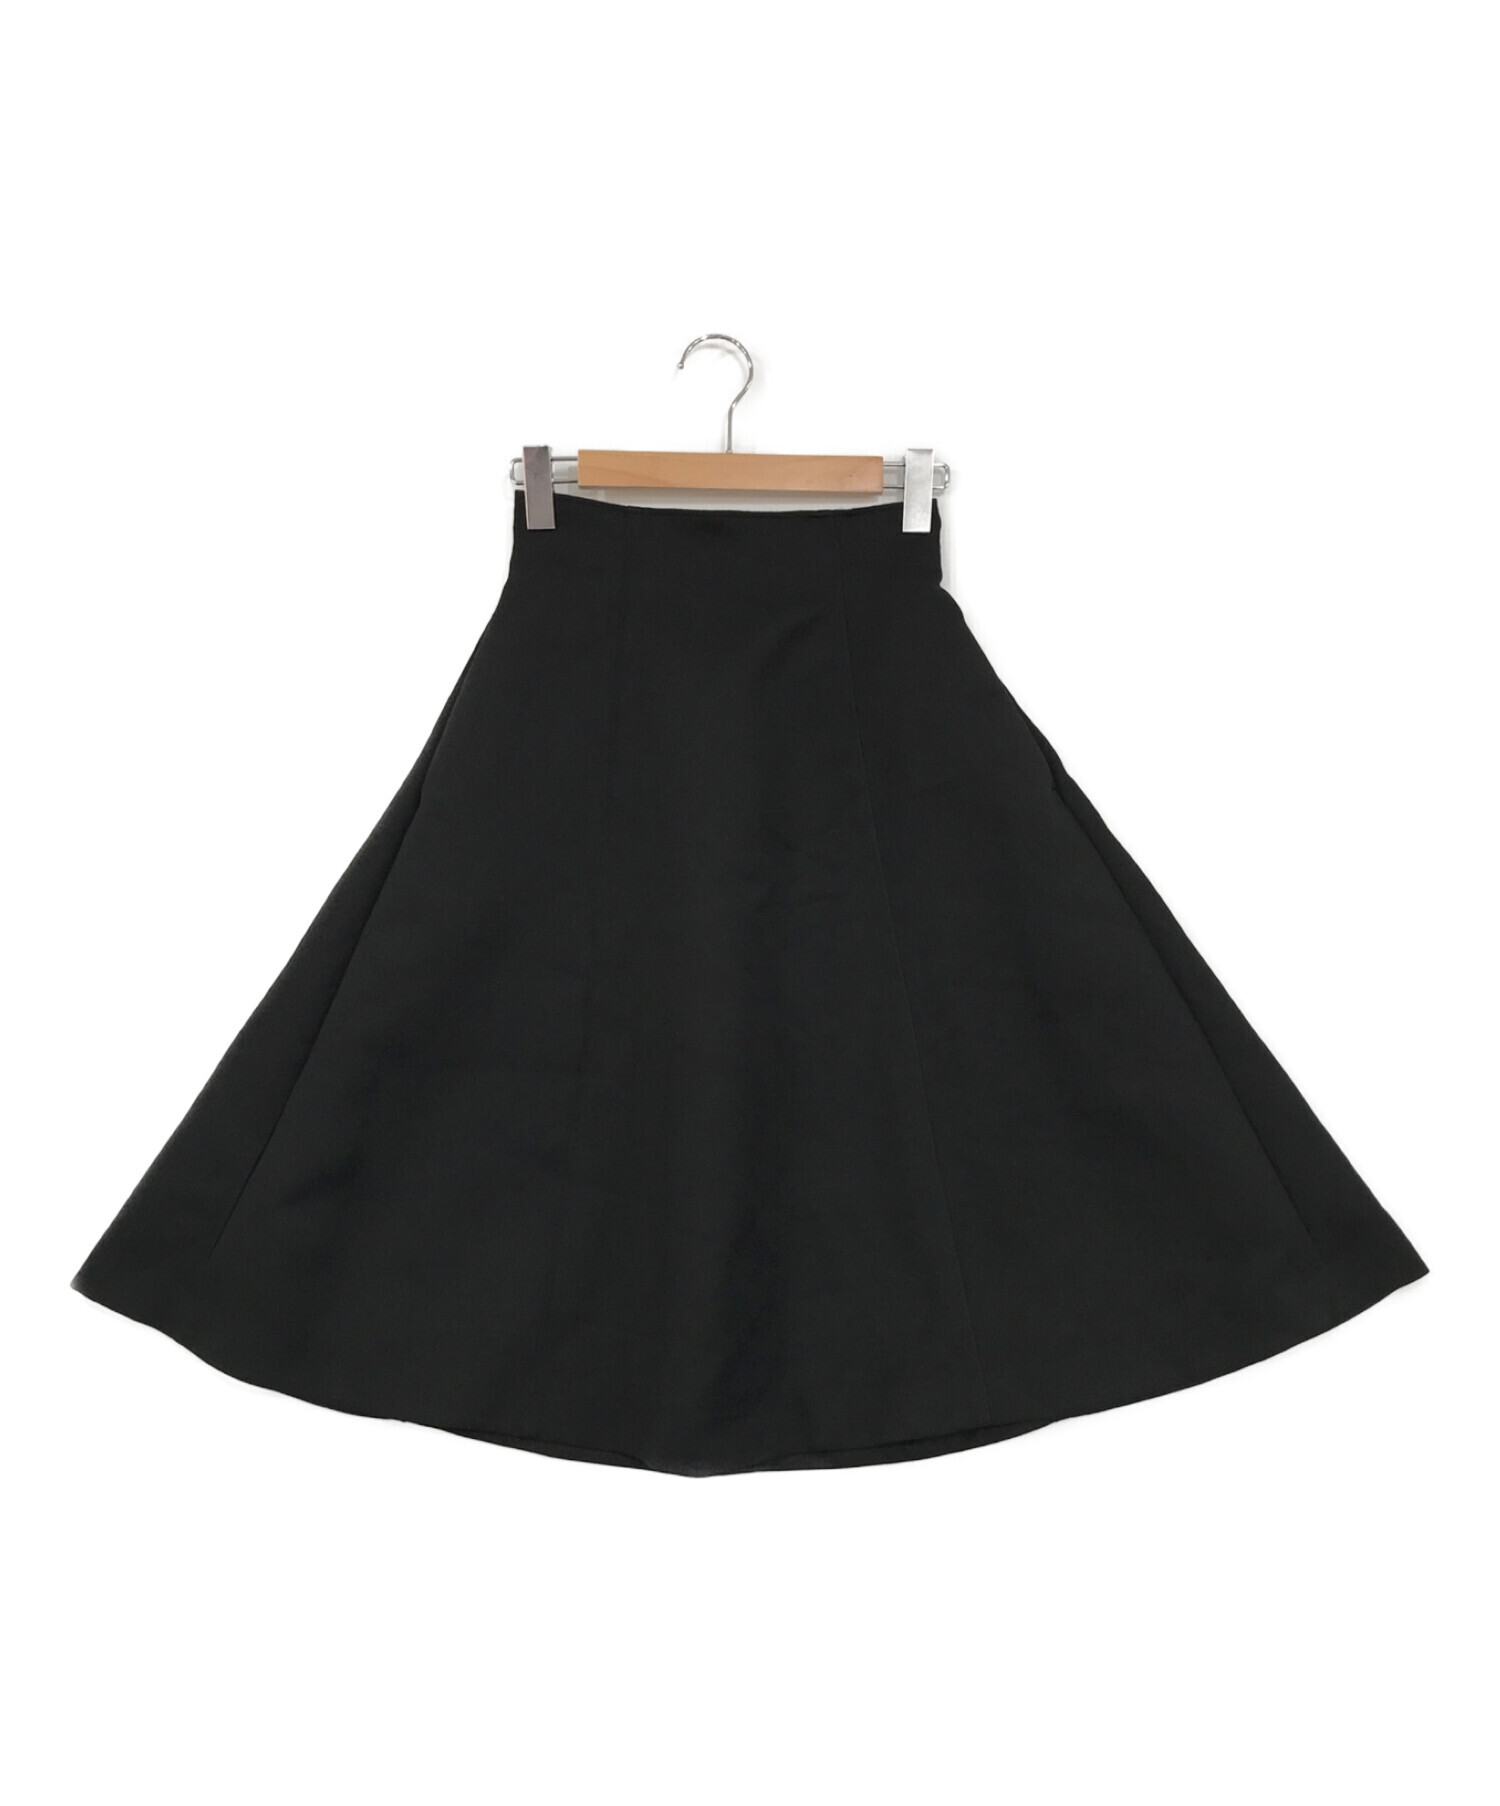 Rirandture (リランドチュール) ハイウエストミディスカート ブラック サイズ:SIZE 2 未使用品